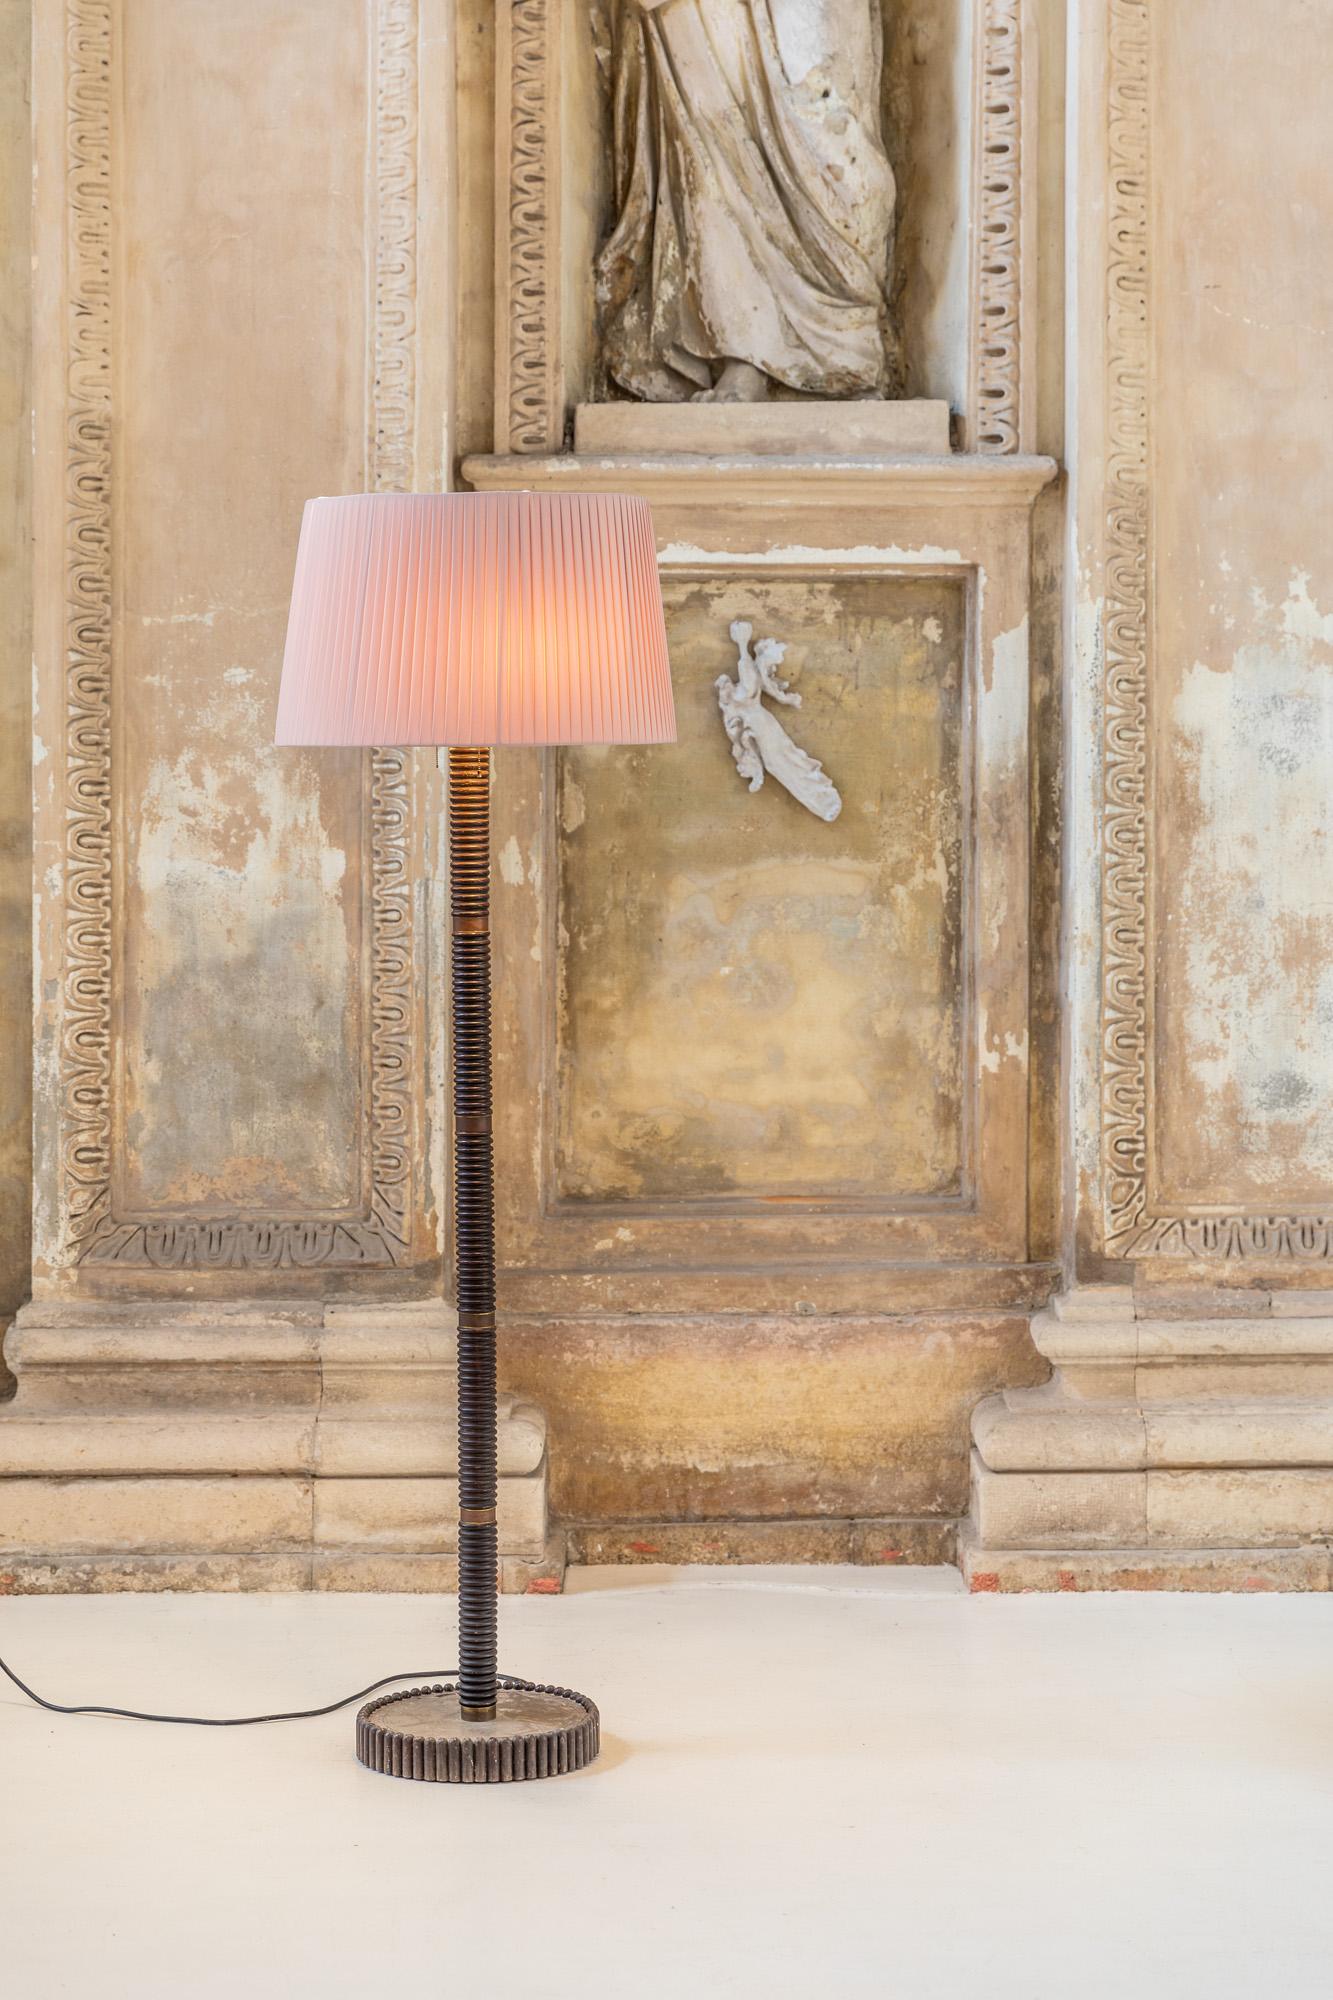 Elegante Stehleuchte mit Holz- und Messingstruktur, hergestellt in Italien in den 40er Jahren.
Zwei Glühbirnenabdeckungen mit einem rosafarbenen plissierten Stoffschirm, montiert auf einem fein dekorierten Lampenfuß und -stiel.